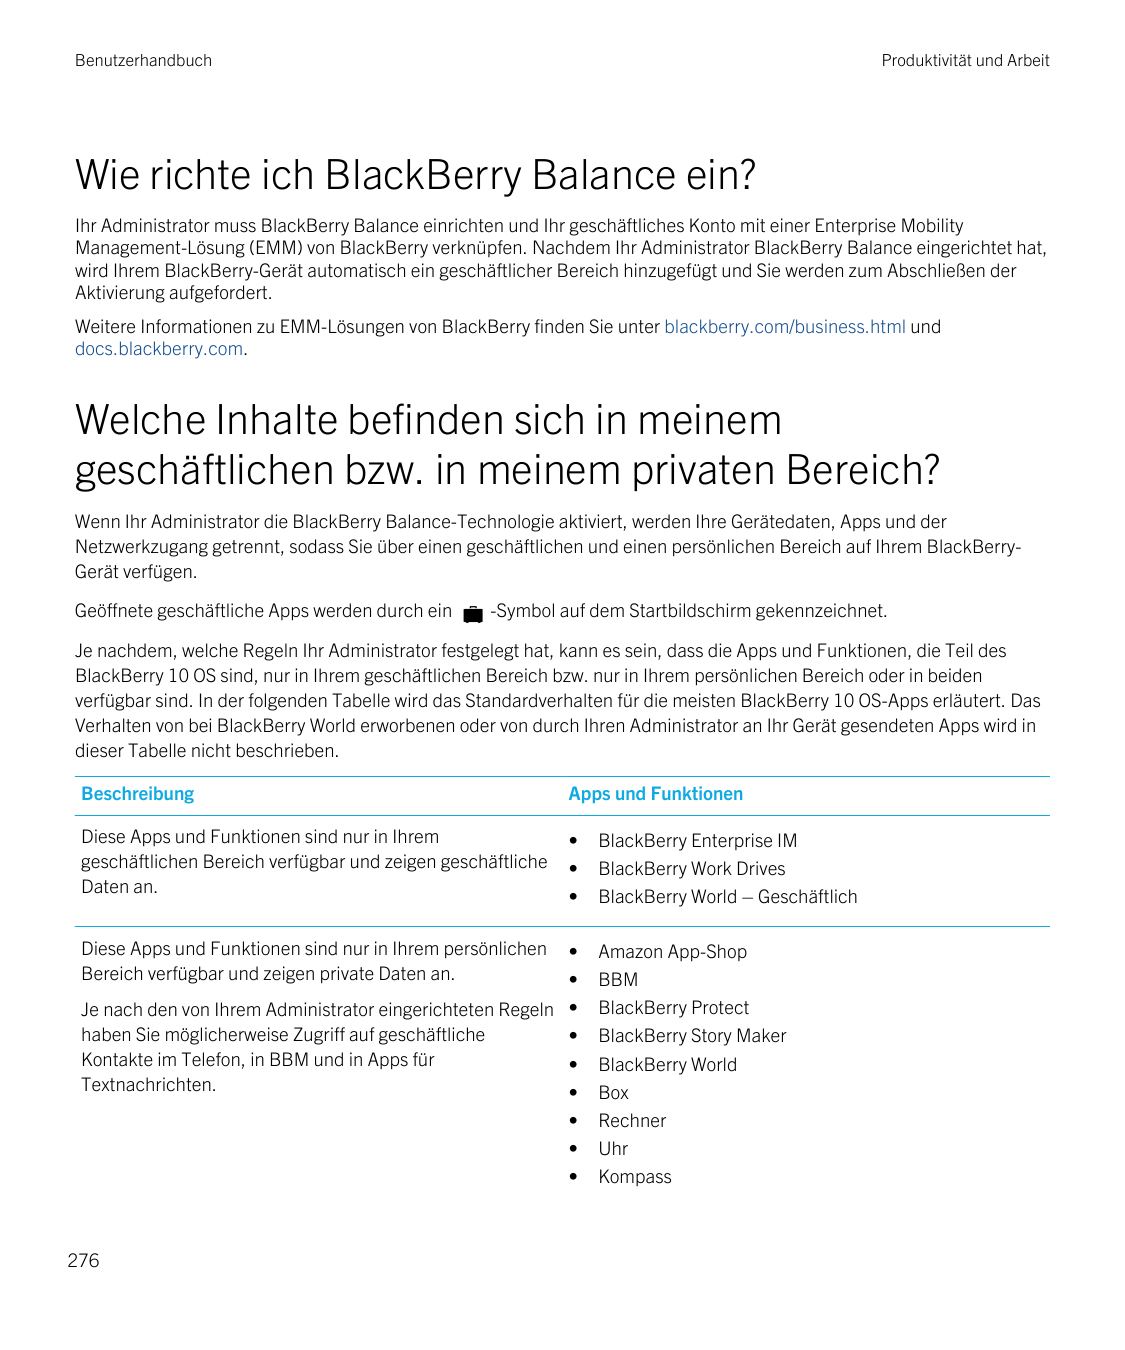 BenutzerhandbuchProduktivität und ArbeitWie richte ich BlackBerry Balance ein?Ihr Administrator muss BlackBerry Balance einricht